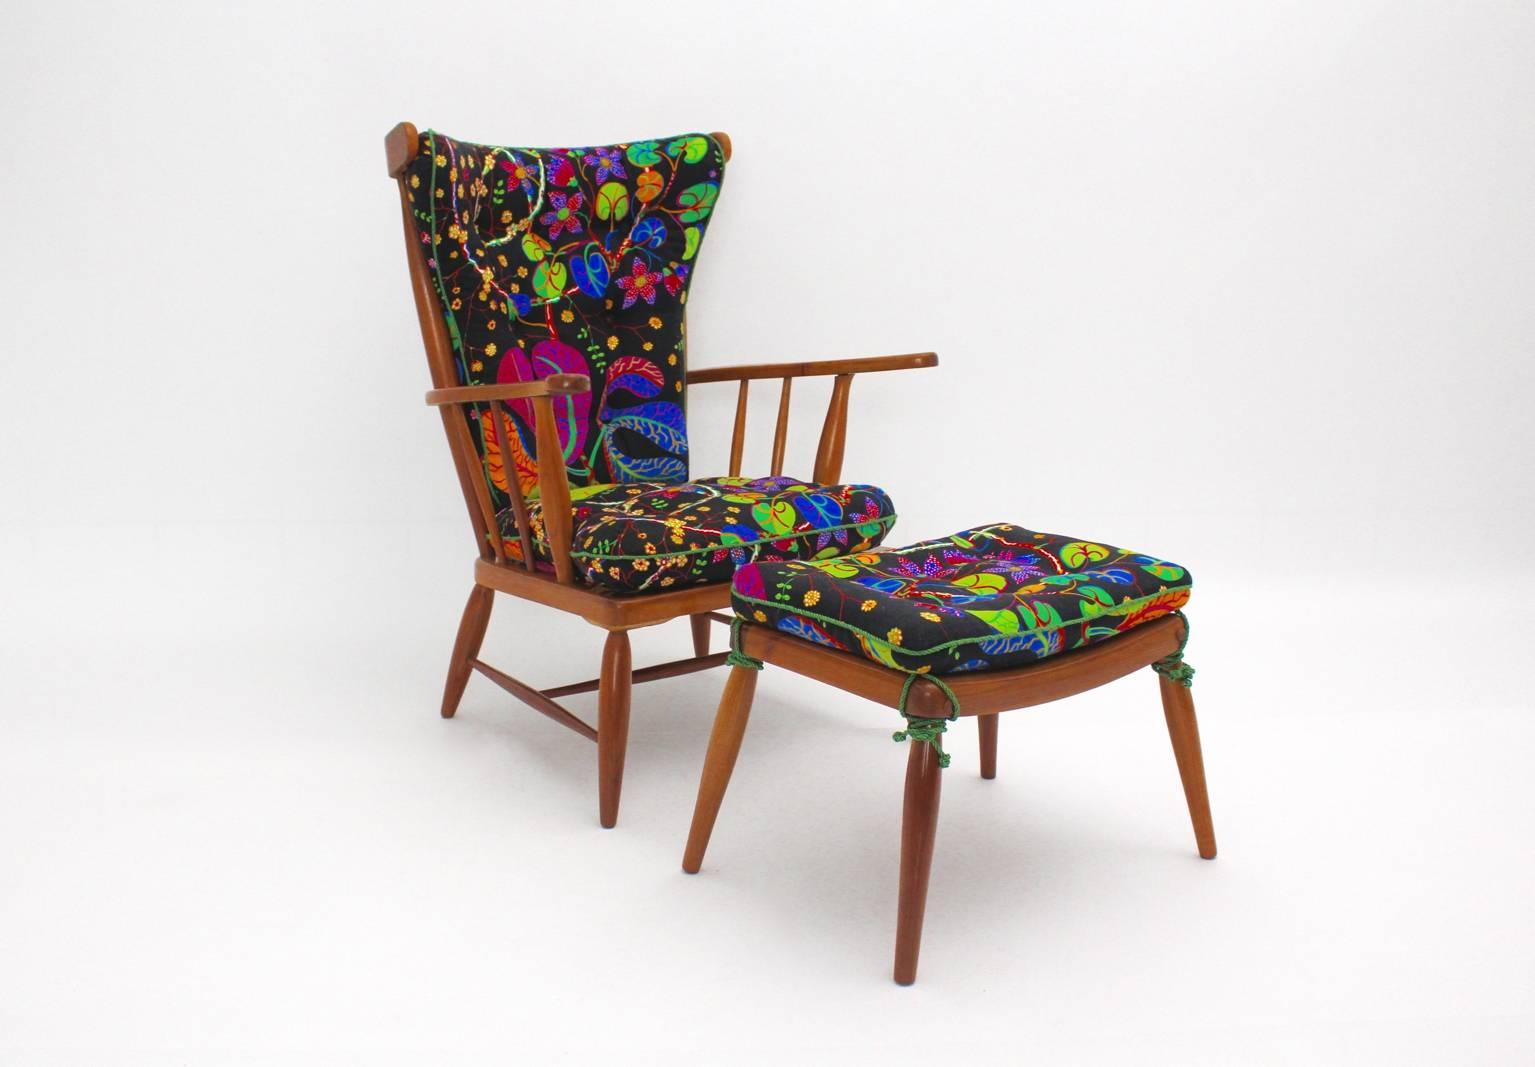 Mid Century Modern Sessel oder Lounge Chair mit Ottomane aus massivem Kirschholz von Anna Lülja Praun, um 1952 Österreich.

Anna Lülja Praun (1906-2004) schuf auch viele Möbelentwürfe für das berühmte Wiener Einrichtungshaus 